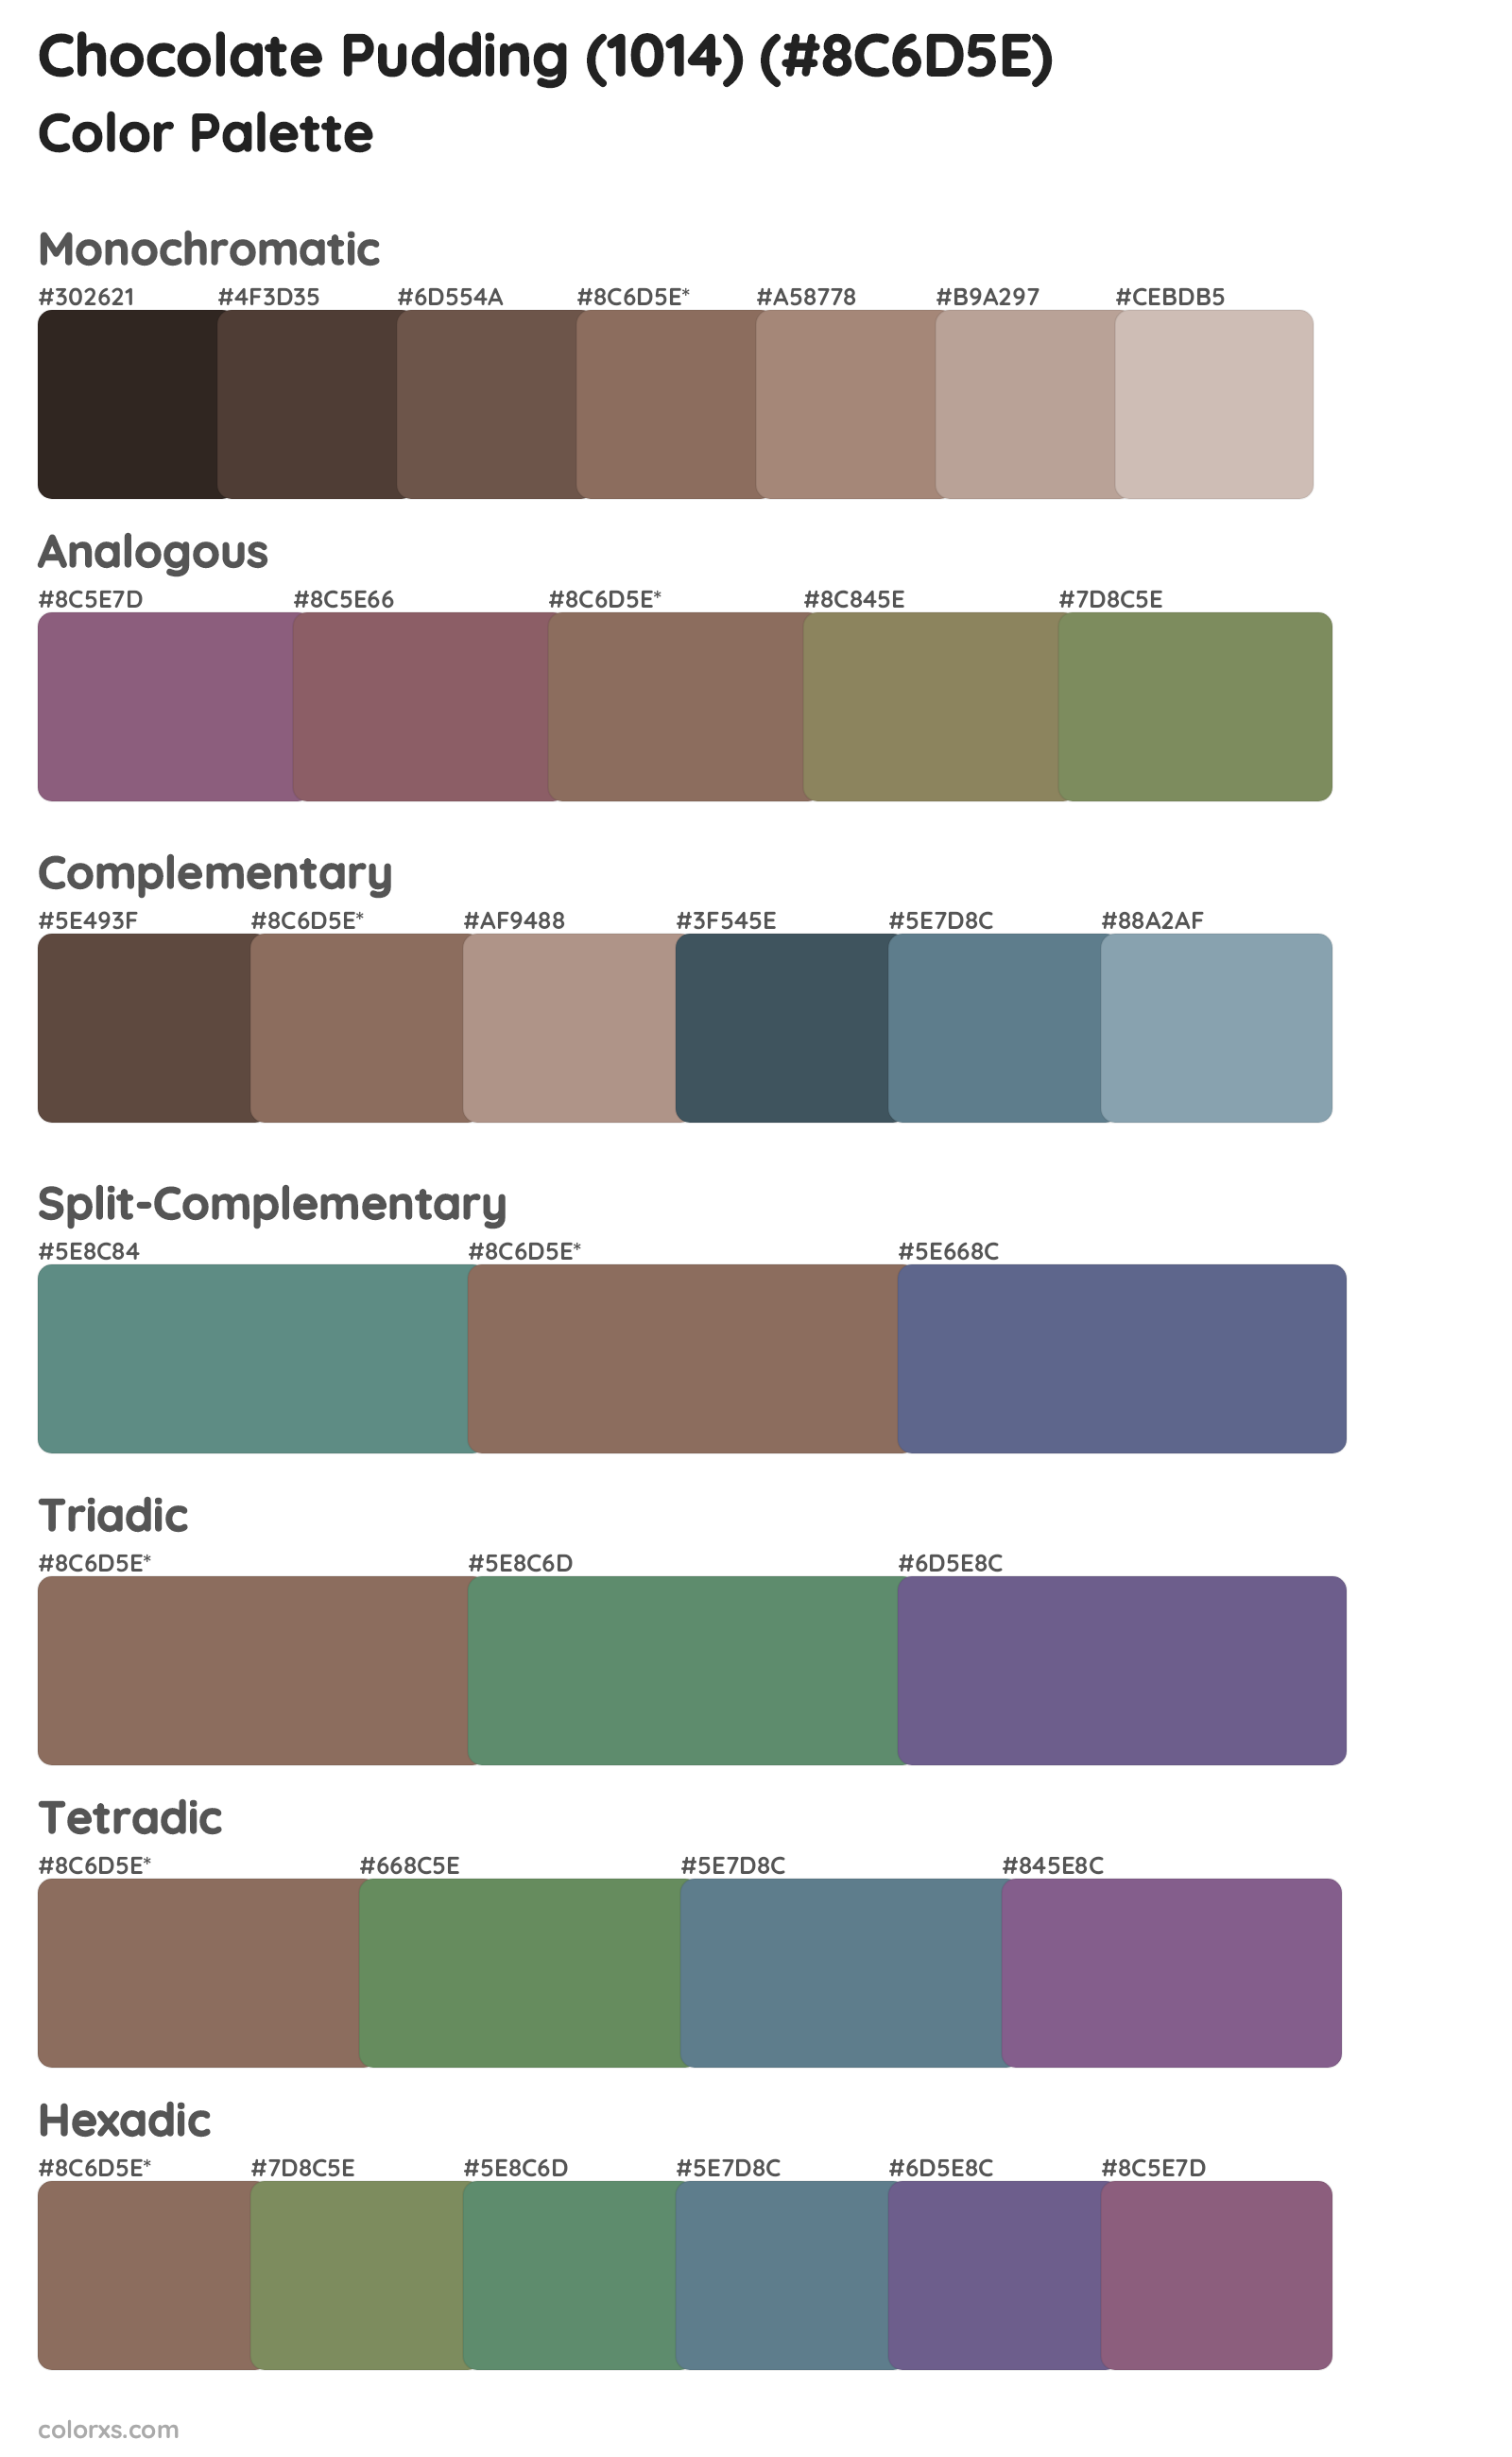 Chocolate Pudding (1014) Color Scheme Palettes